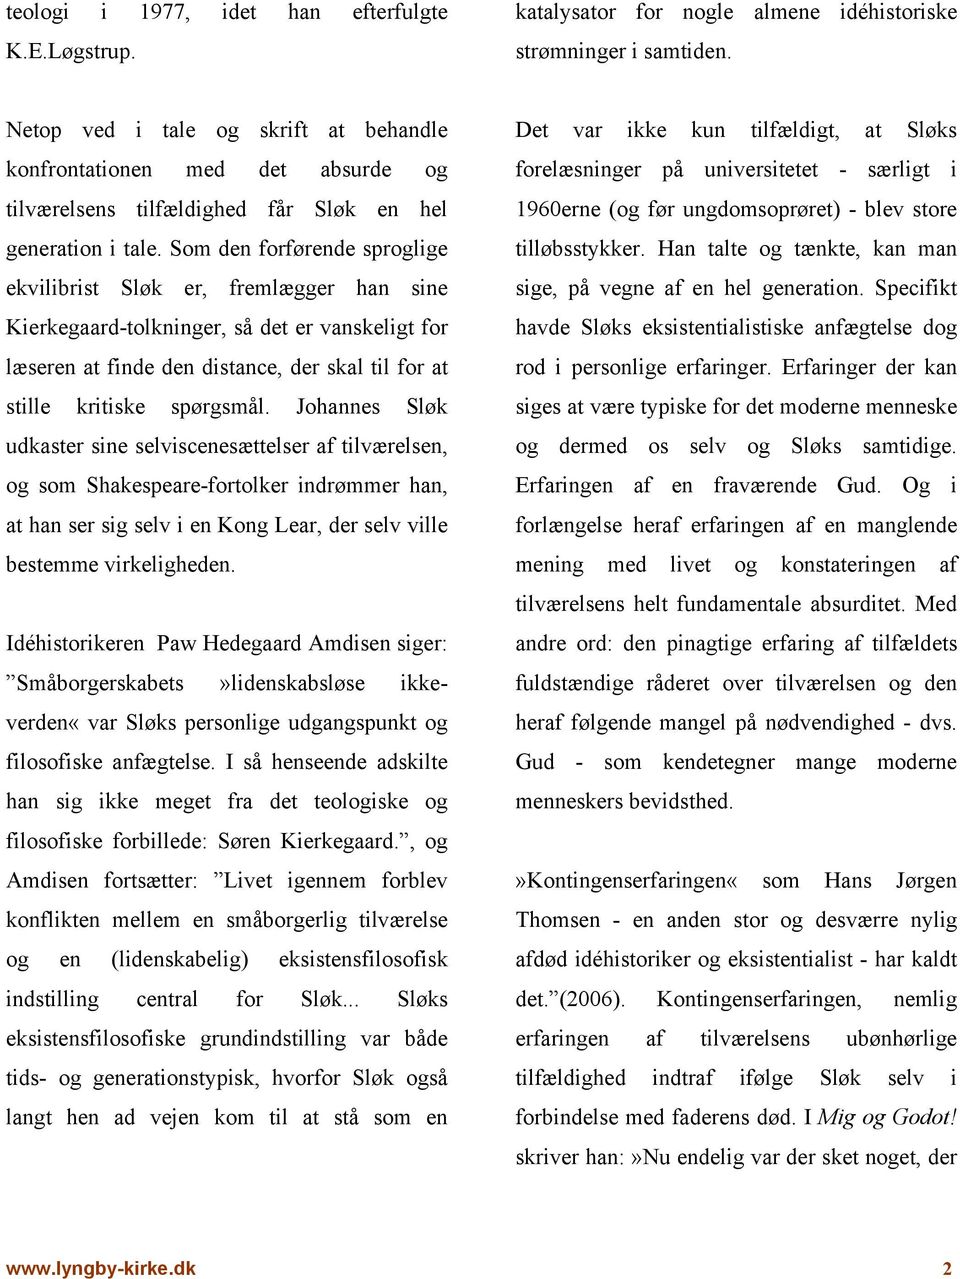 Lyngby Kirke. Kierkegaard og Johannes Sløk. Bork Hansen. af - PDF Gratis download